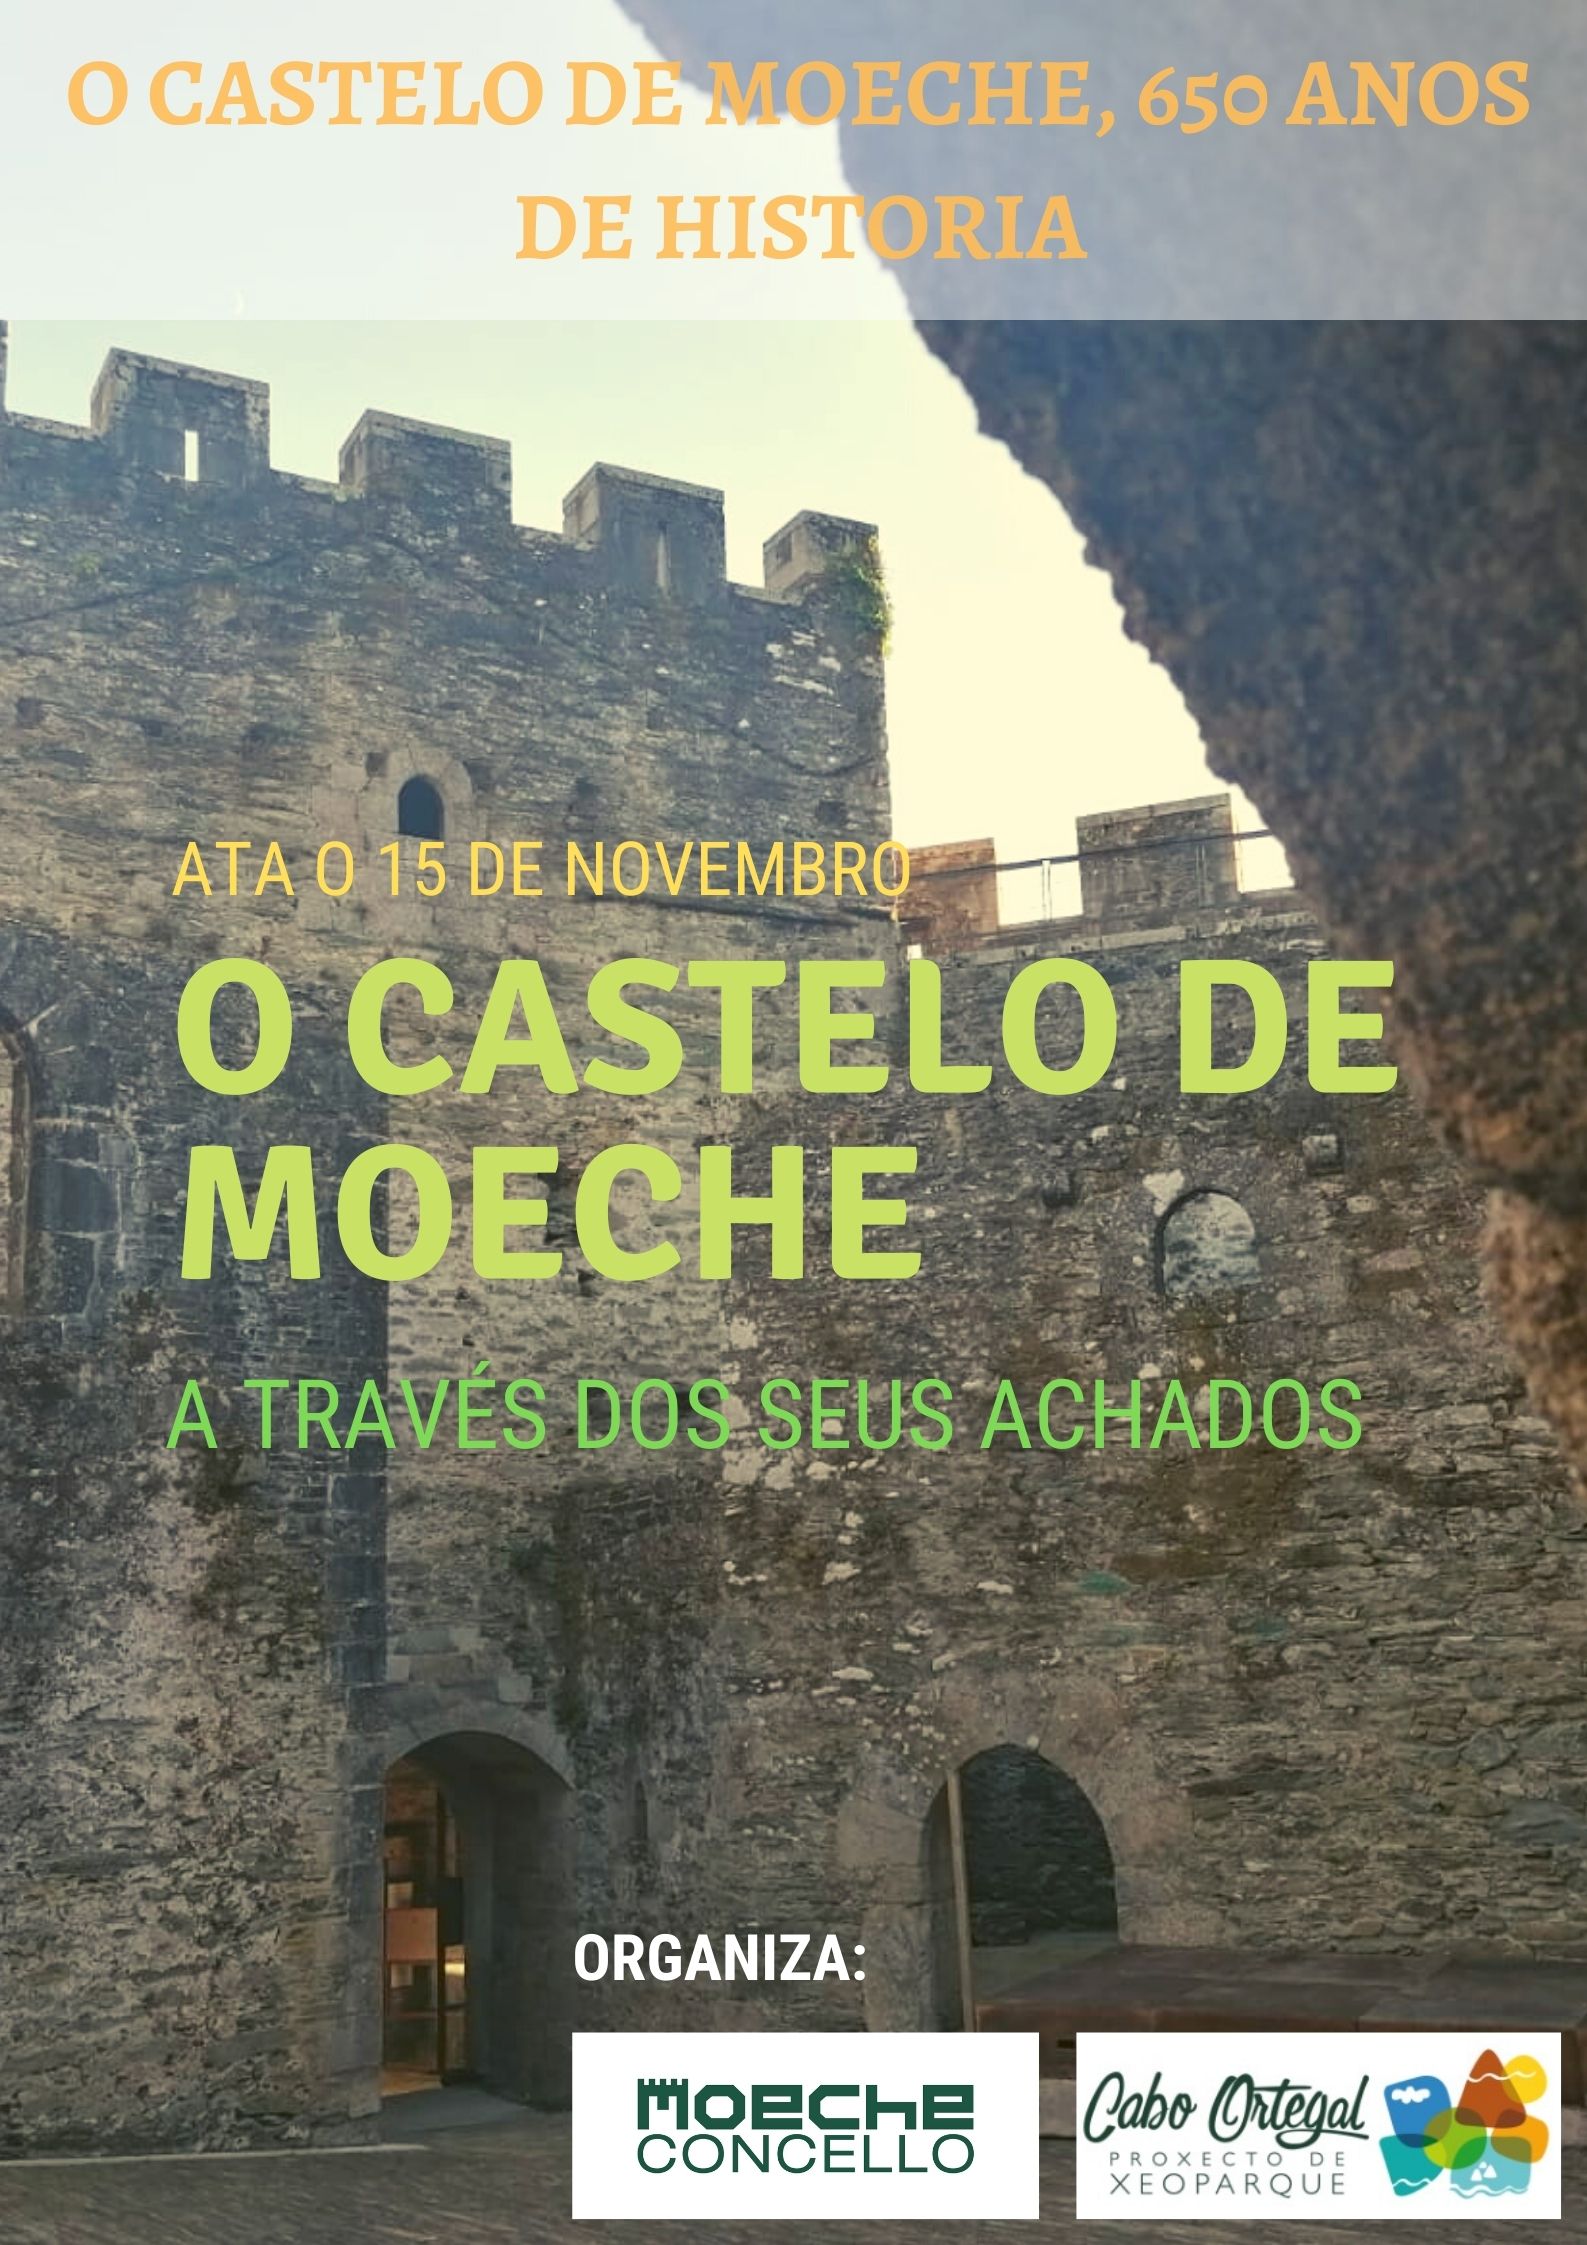 Exposición "O castelo de Moeche a través dos seus achados"